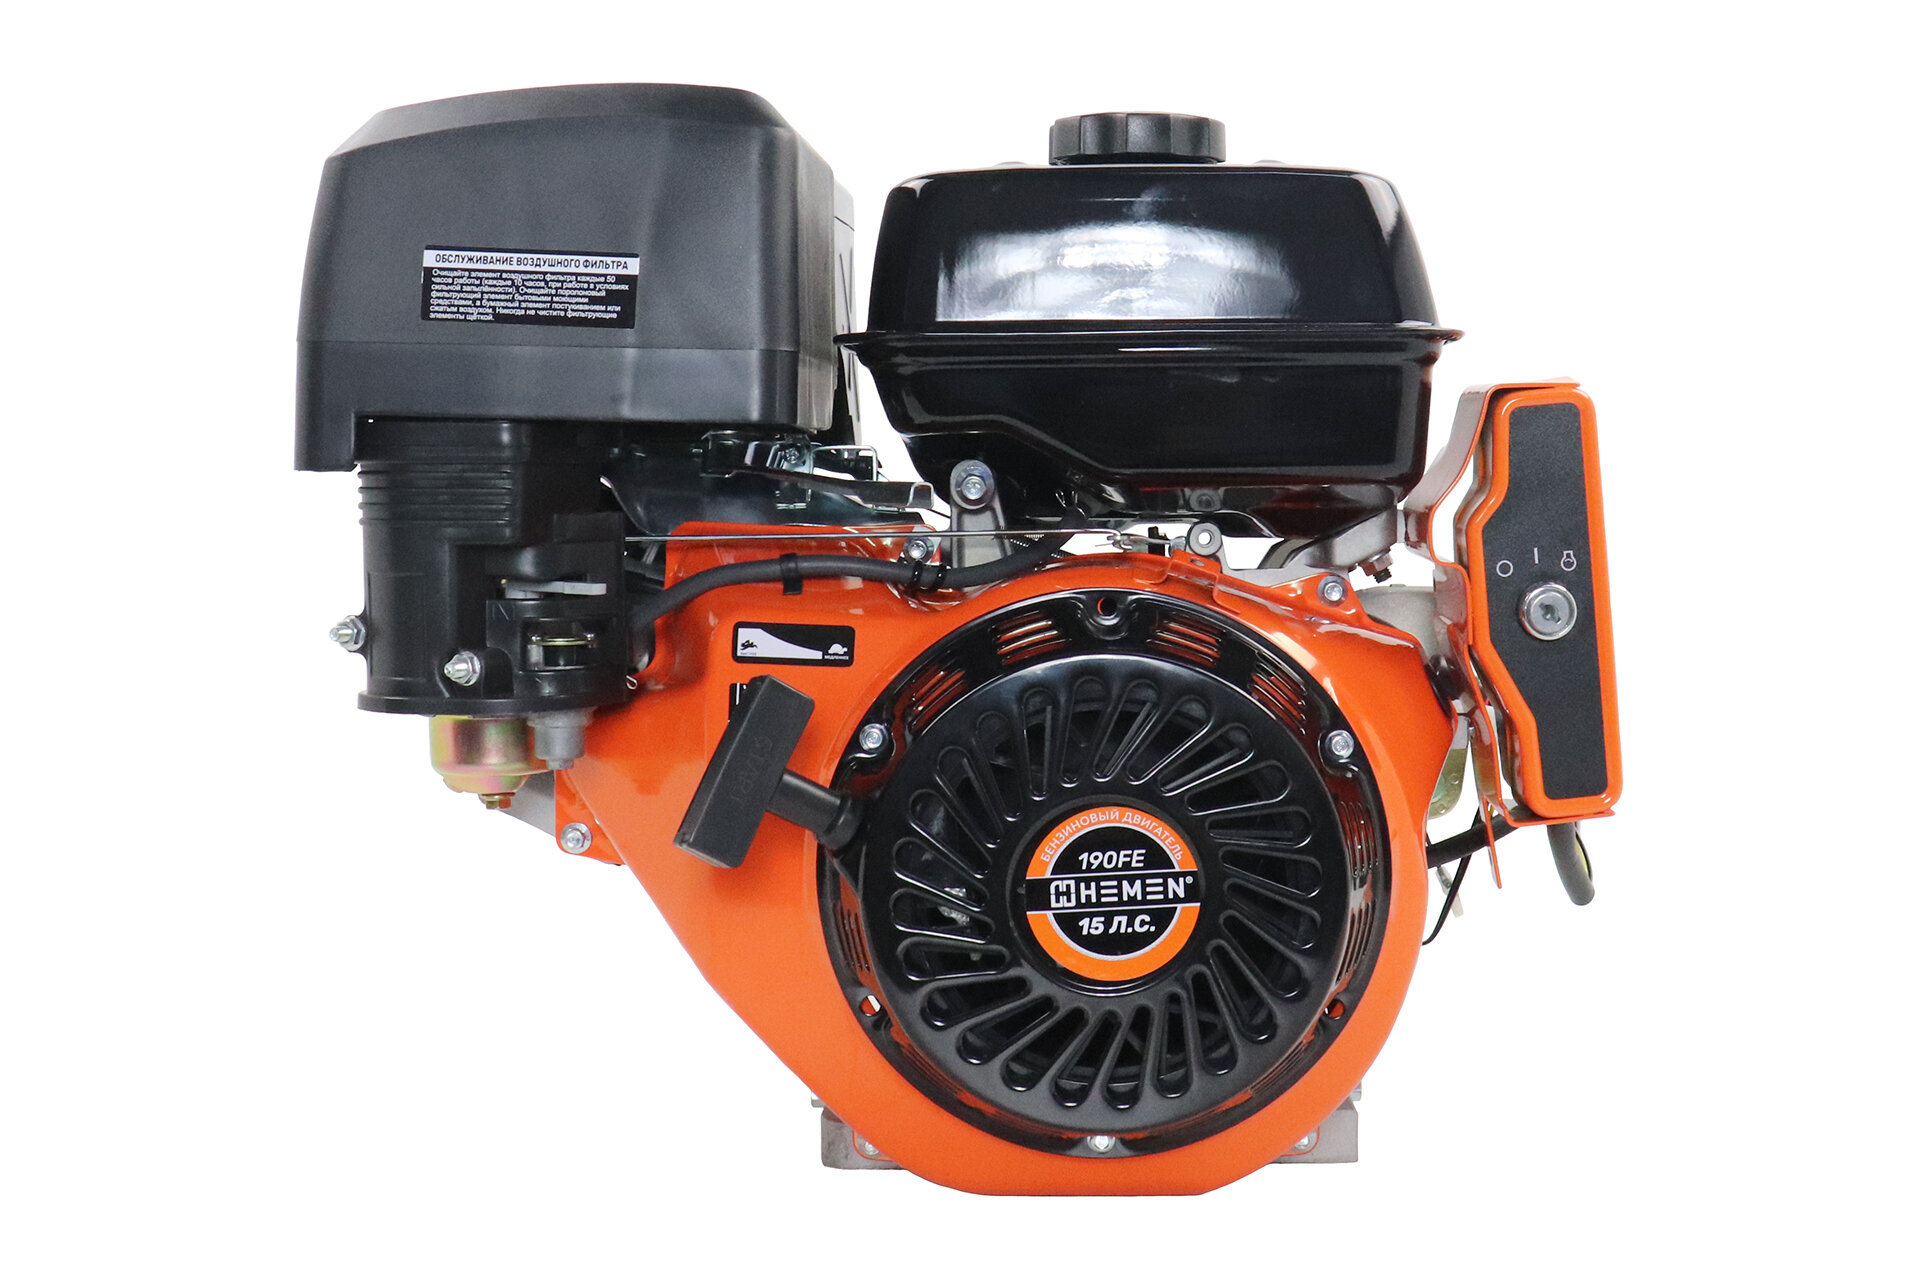 Двигатель HEMEN 15,0 л. с. с катушкой 15А180Вт 190FE (420 см3) электростартер, вал 25 мм